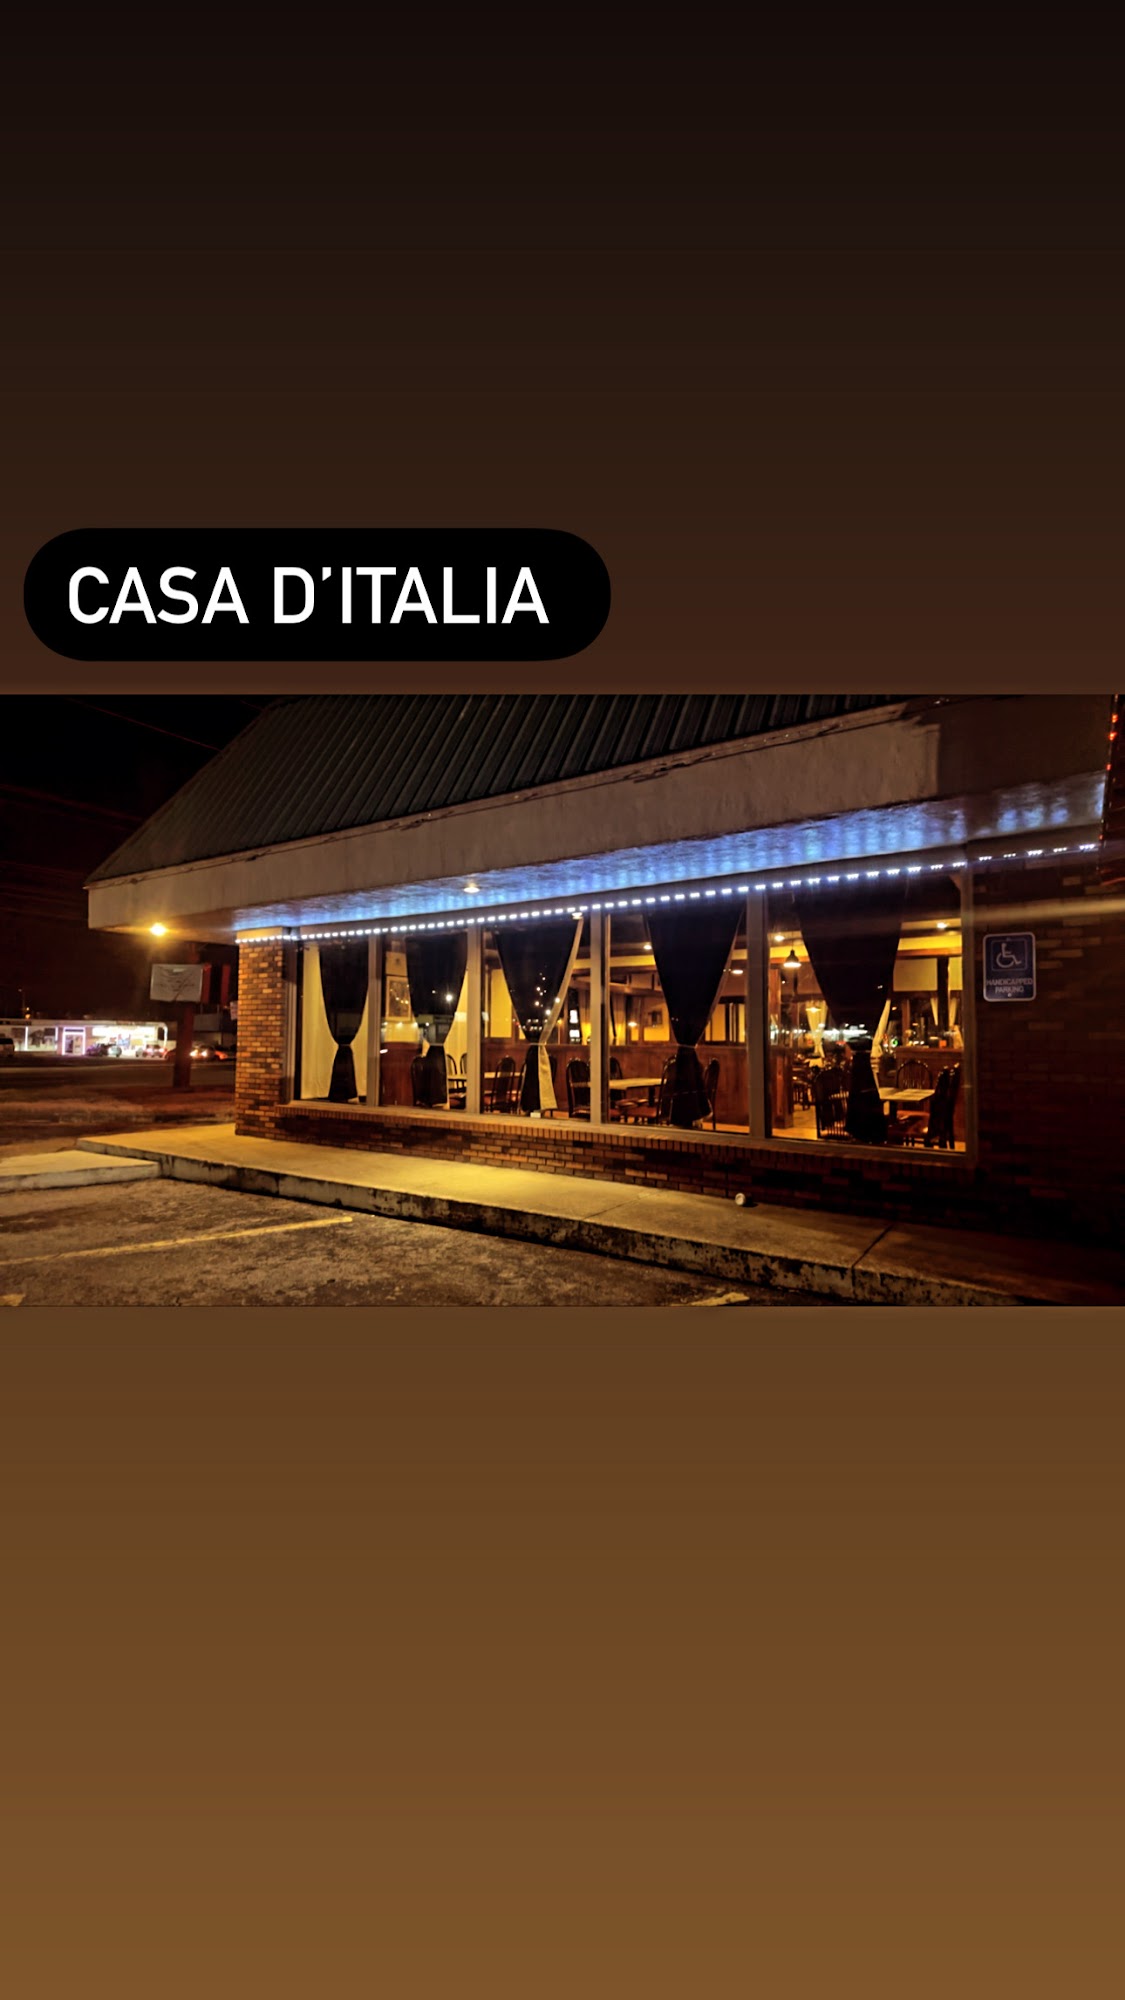 CASA D’ITALIA